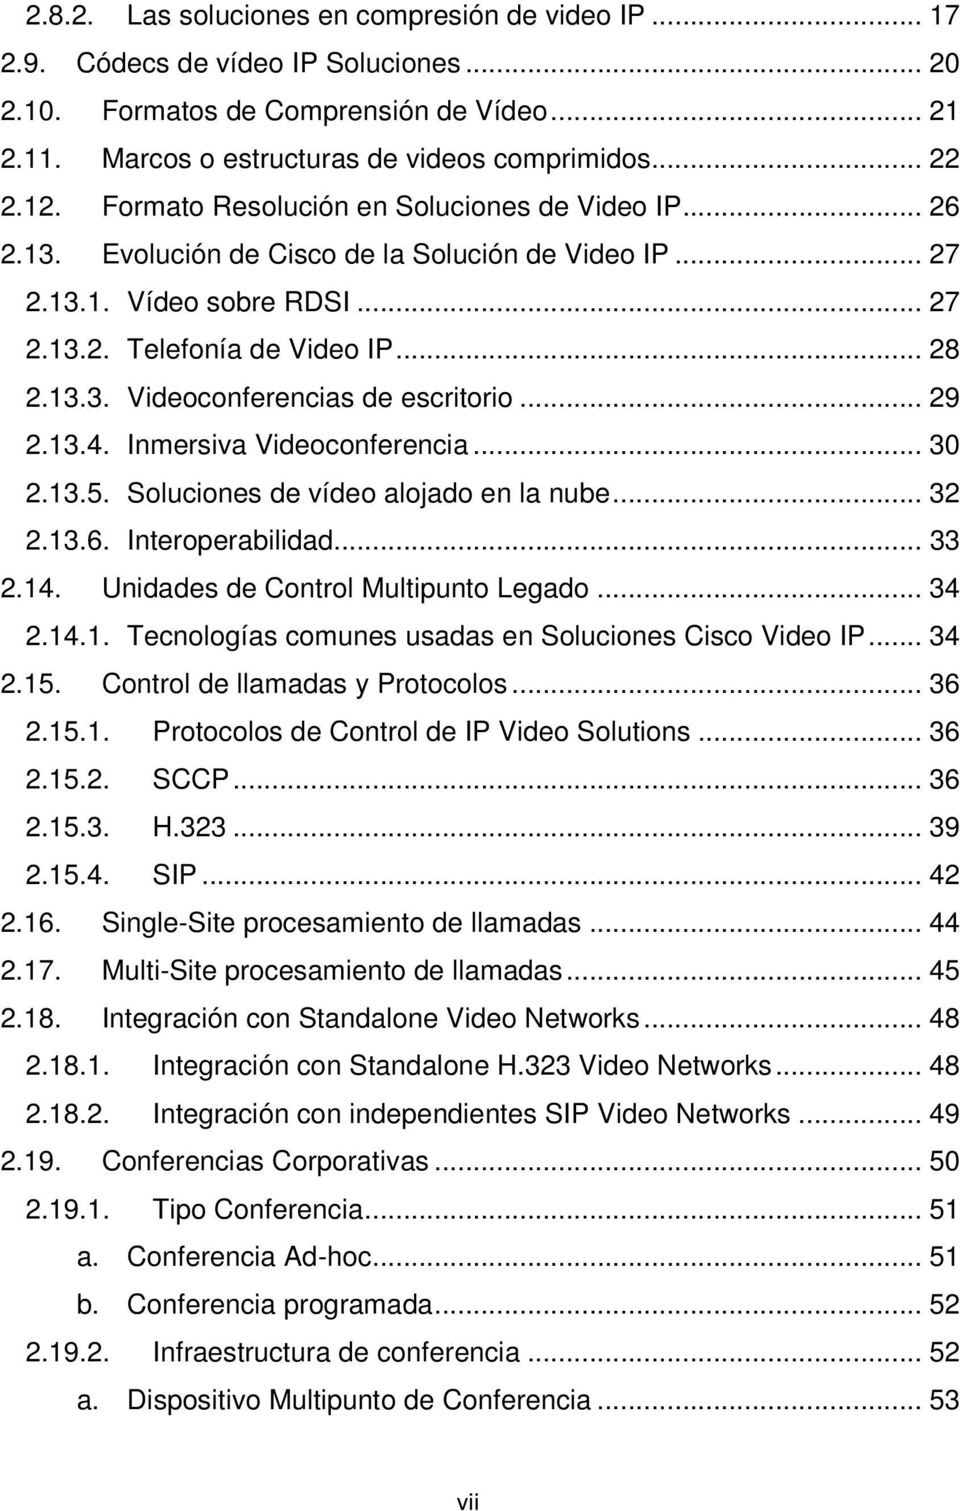 .. 29 2.13.4. Inmersiva Videoconferencia... 30 2.13.5. Soluciones de vídeo alojado en la nube... 32 2.13.6. Interoperabilidad... 33 2.14. Unidades de Control Multipunto Legado... 34 2.14.1. Tecnologías comunes usadas en Soluciones Cisco Video IP.